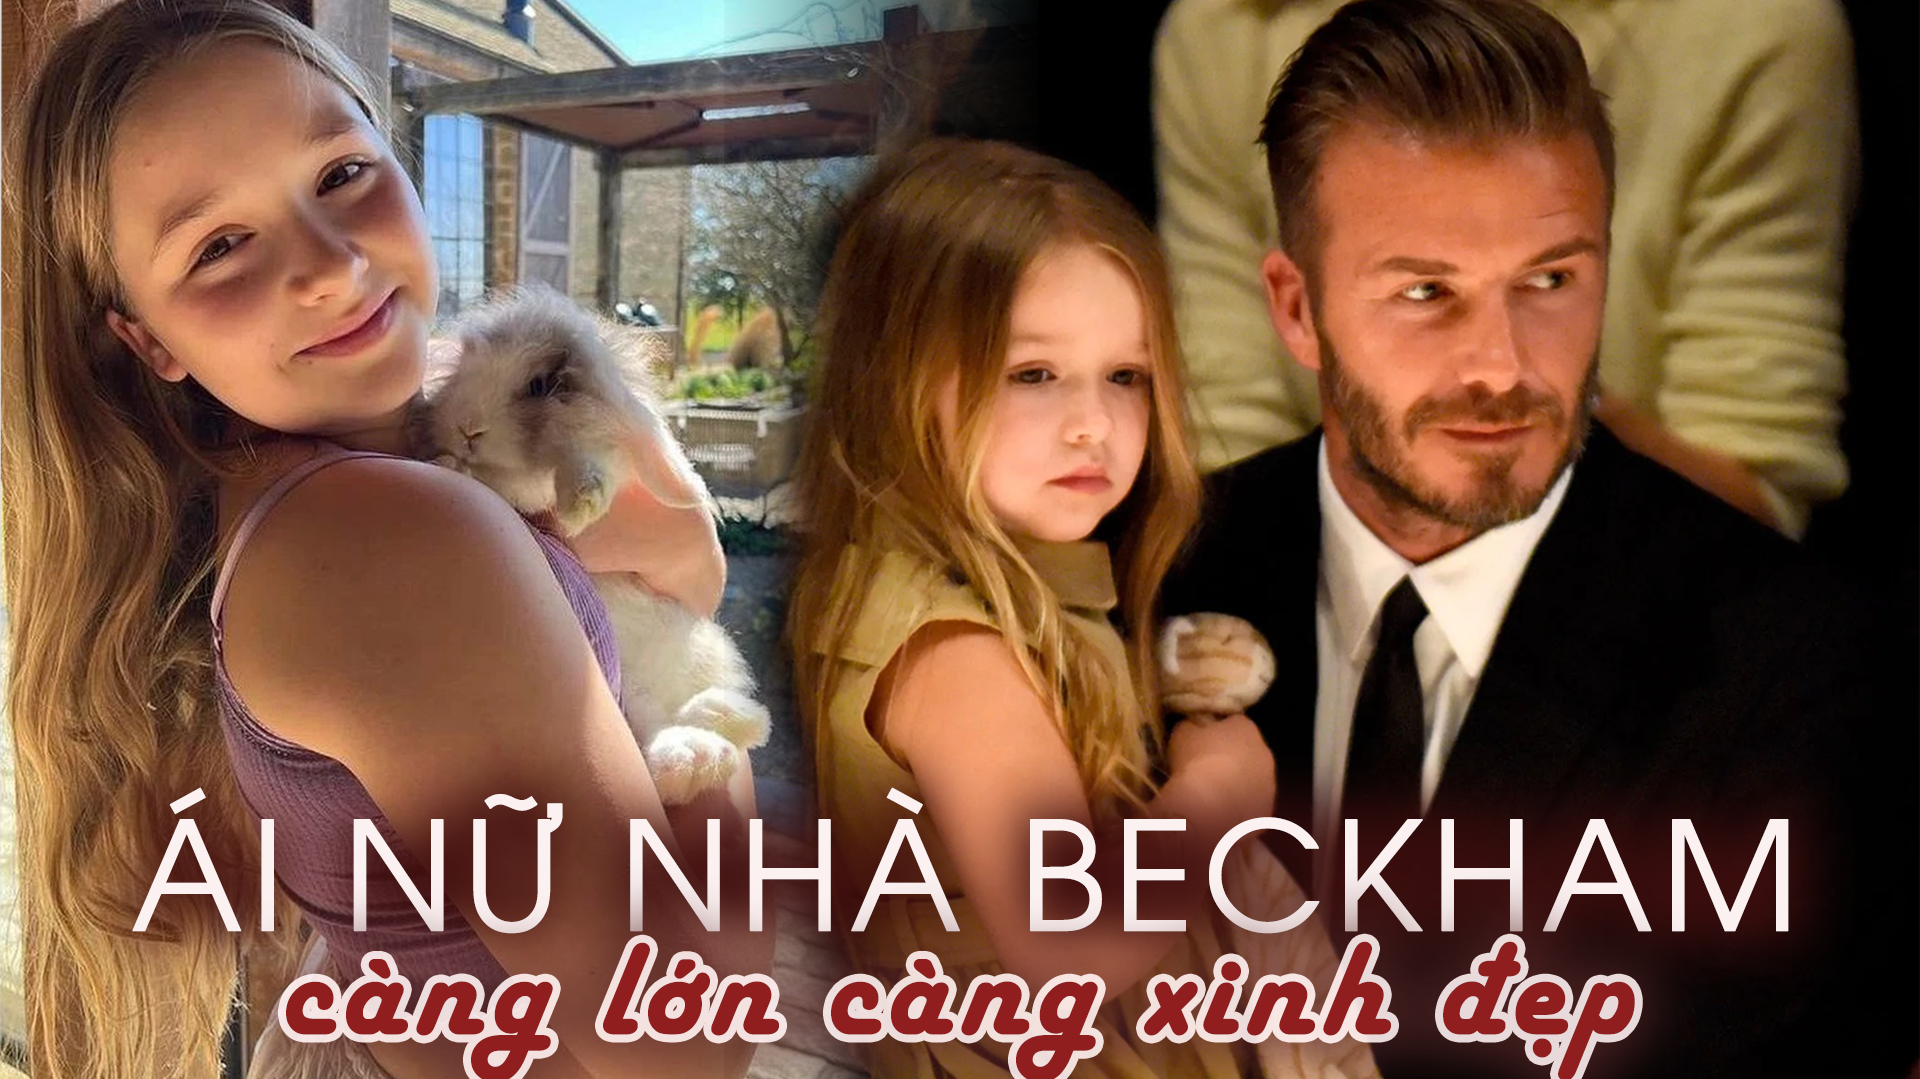 'Công chúa nhỏ' nhà triệu phú Beckham: Sinh ra đã 'ngậm thìa bạc' nhưng được dạy dỗ rất kỷ luật, bộc lộ tài năng trong lĩnh vực không ngờ
